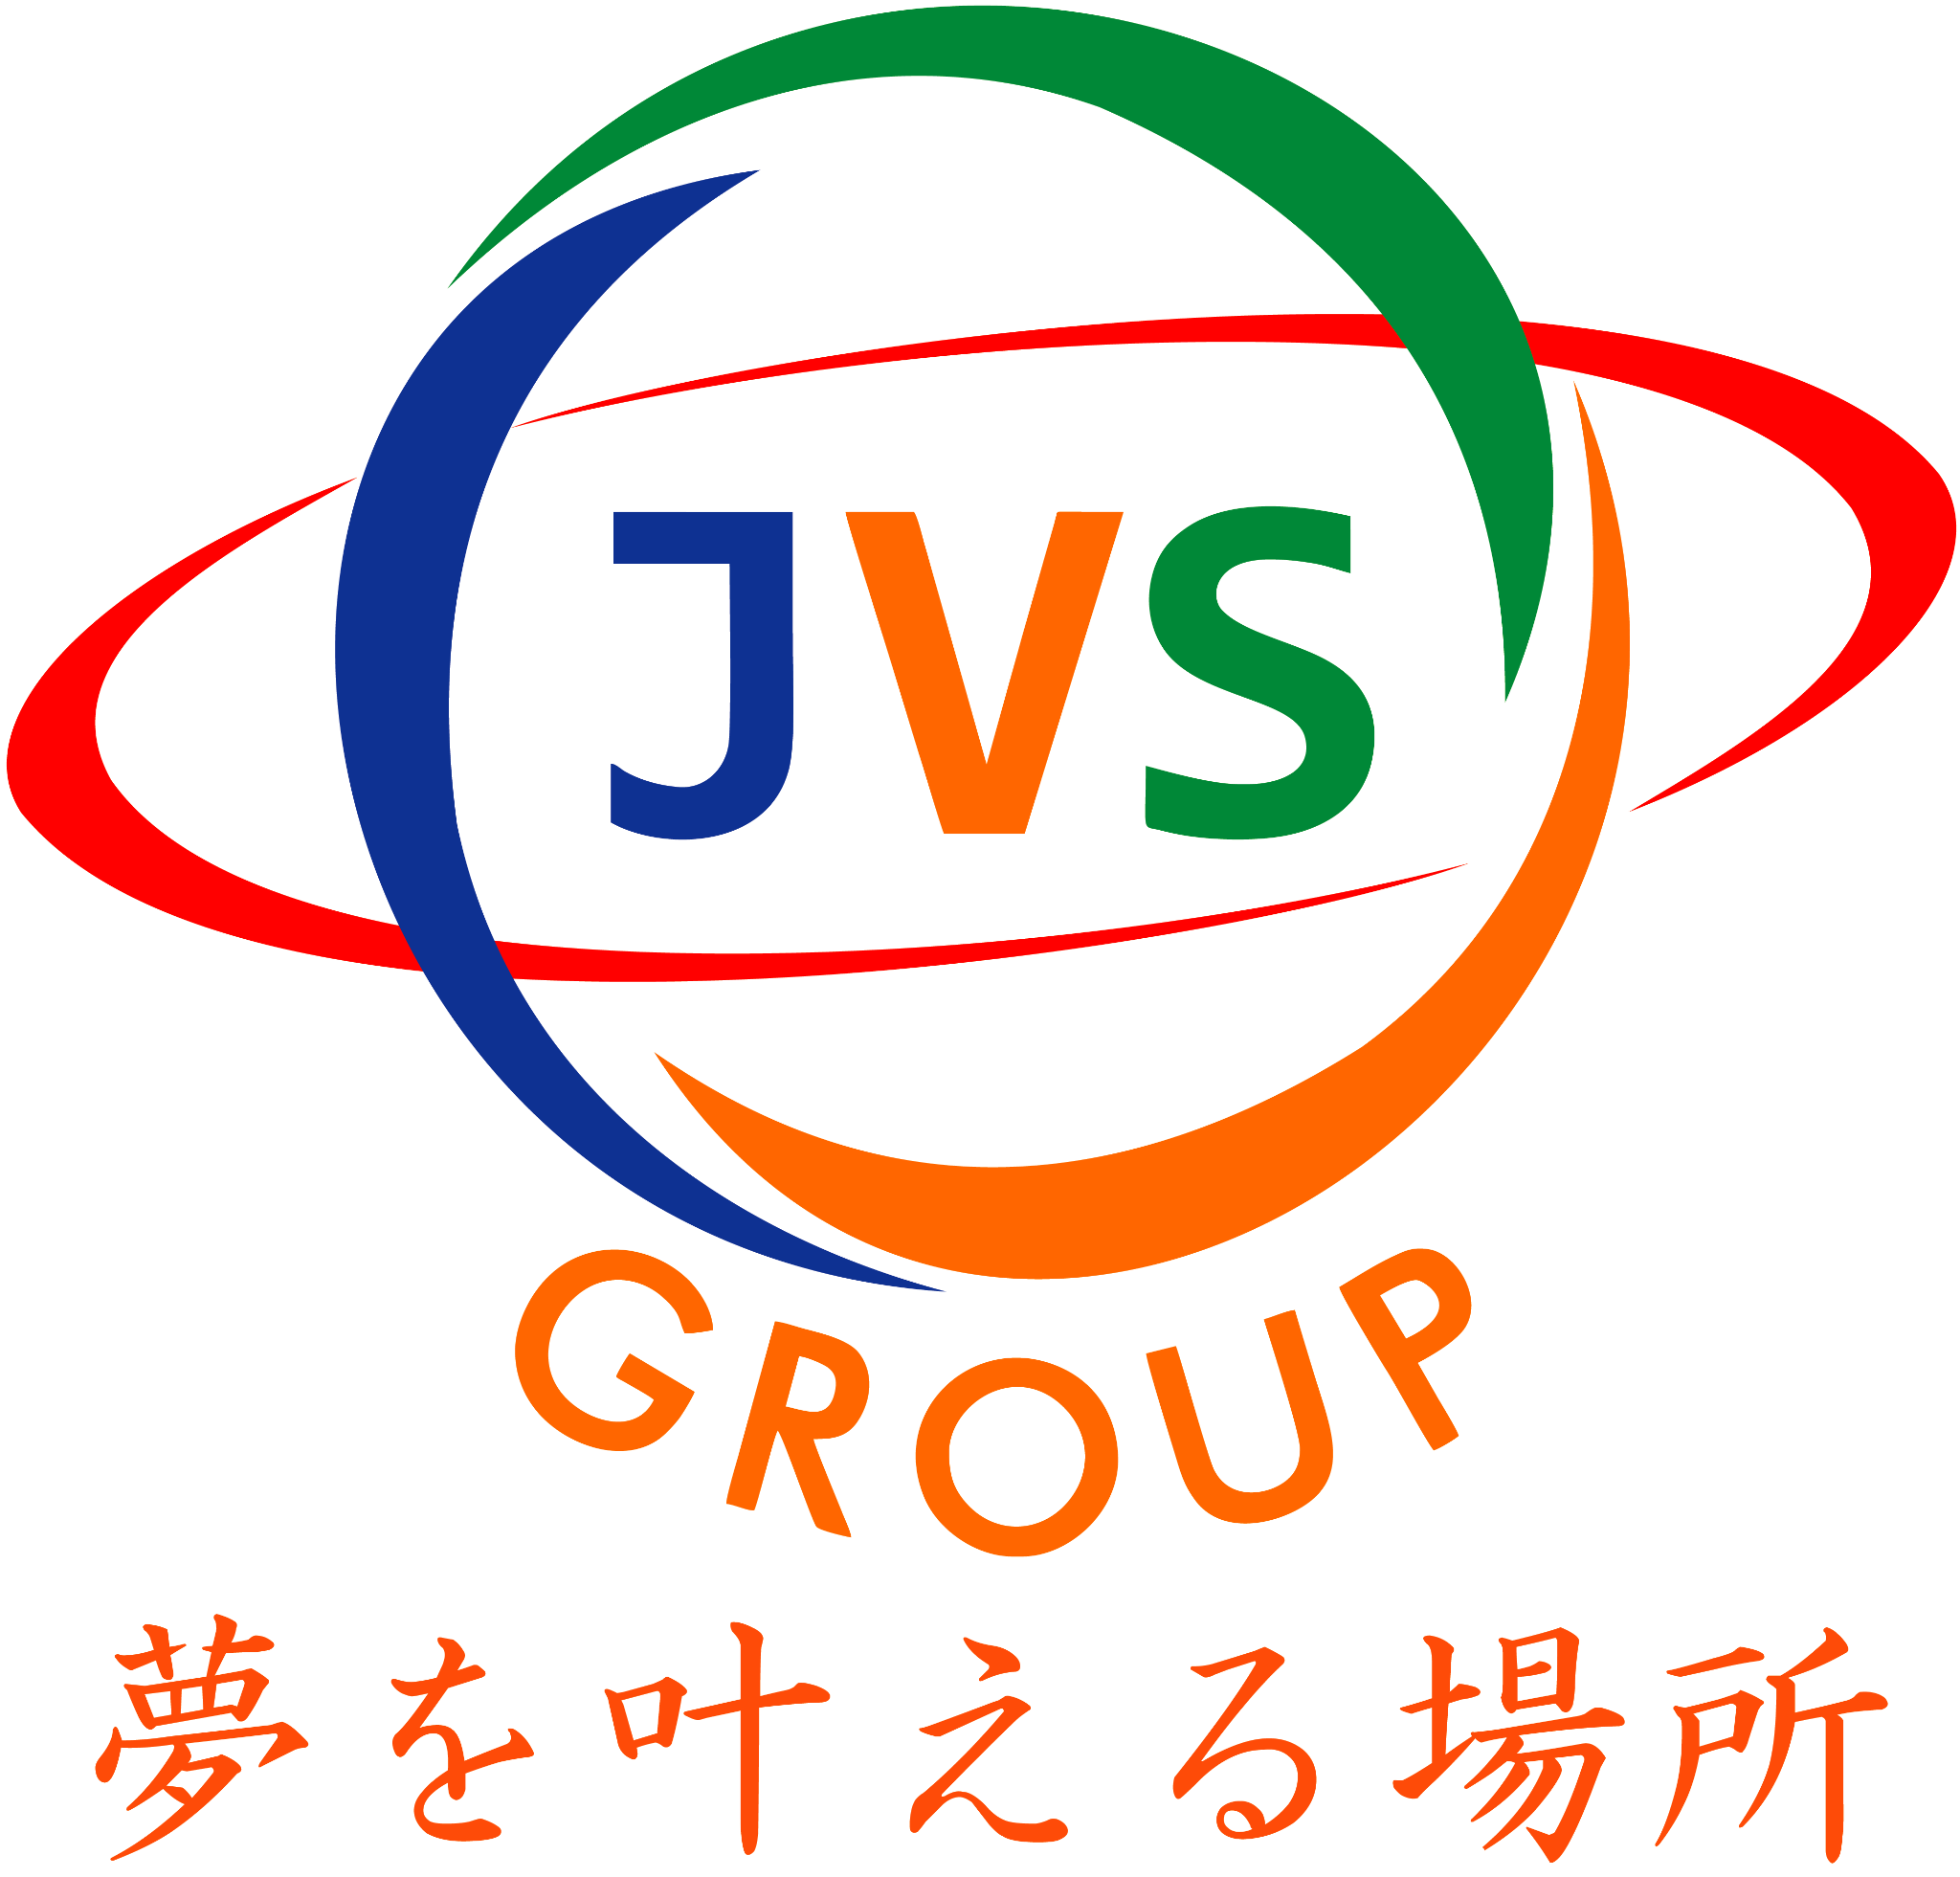 jvsgroup